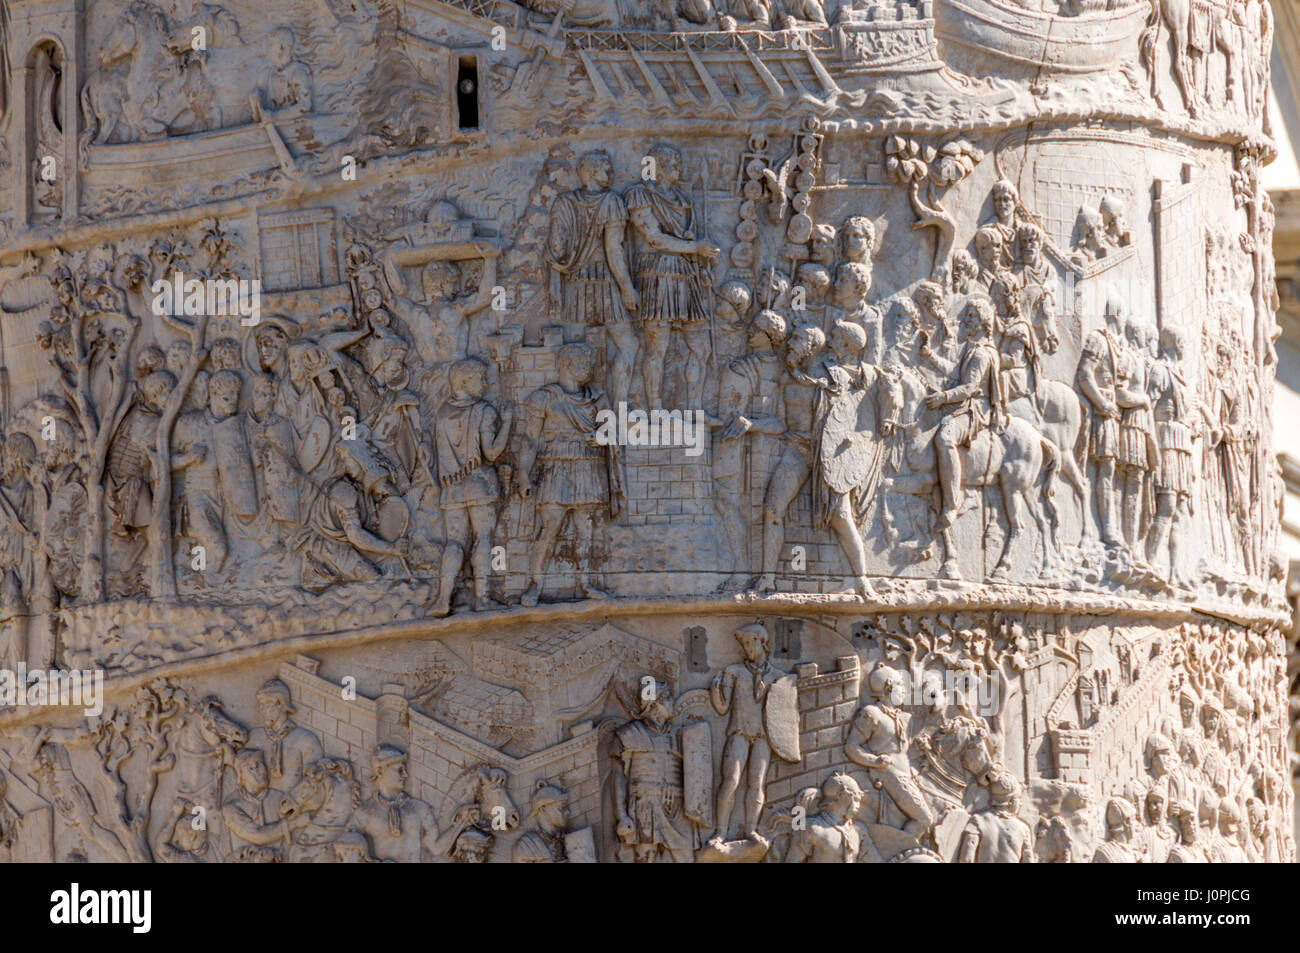 Colonna di Traiano, Roma, Italia - Dettaglio delle incisioni Foto Stock